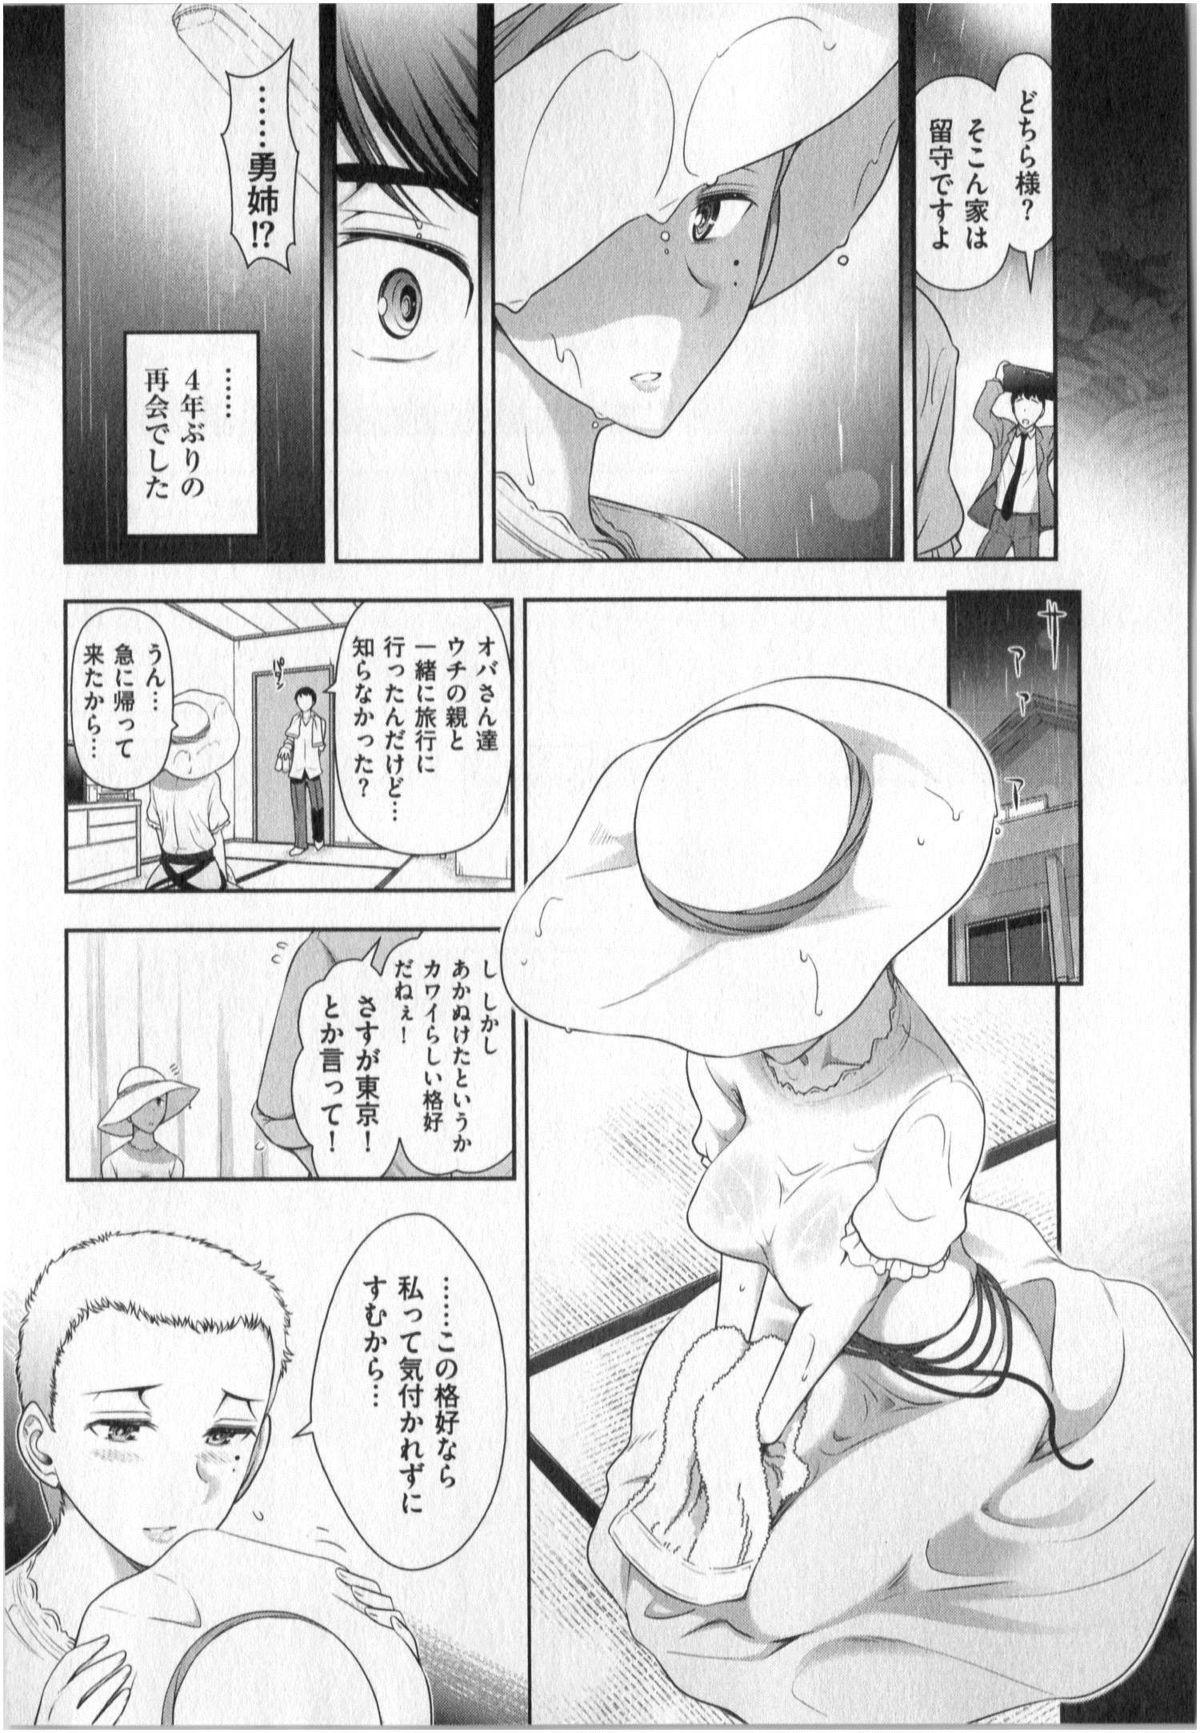 Yonimo Ecchi na Toshidensetsu vol. 01 92